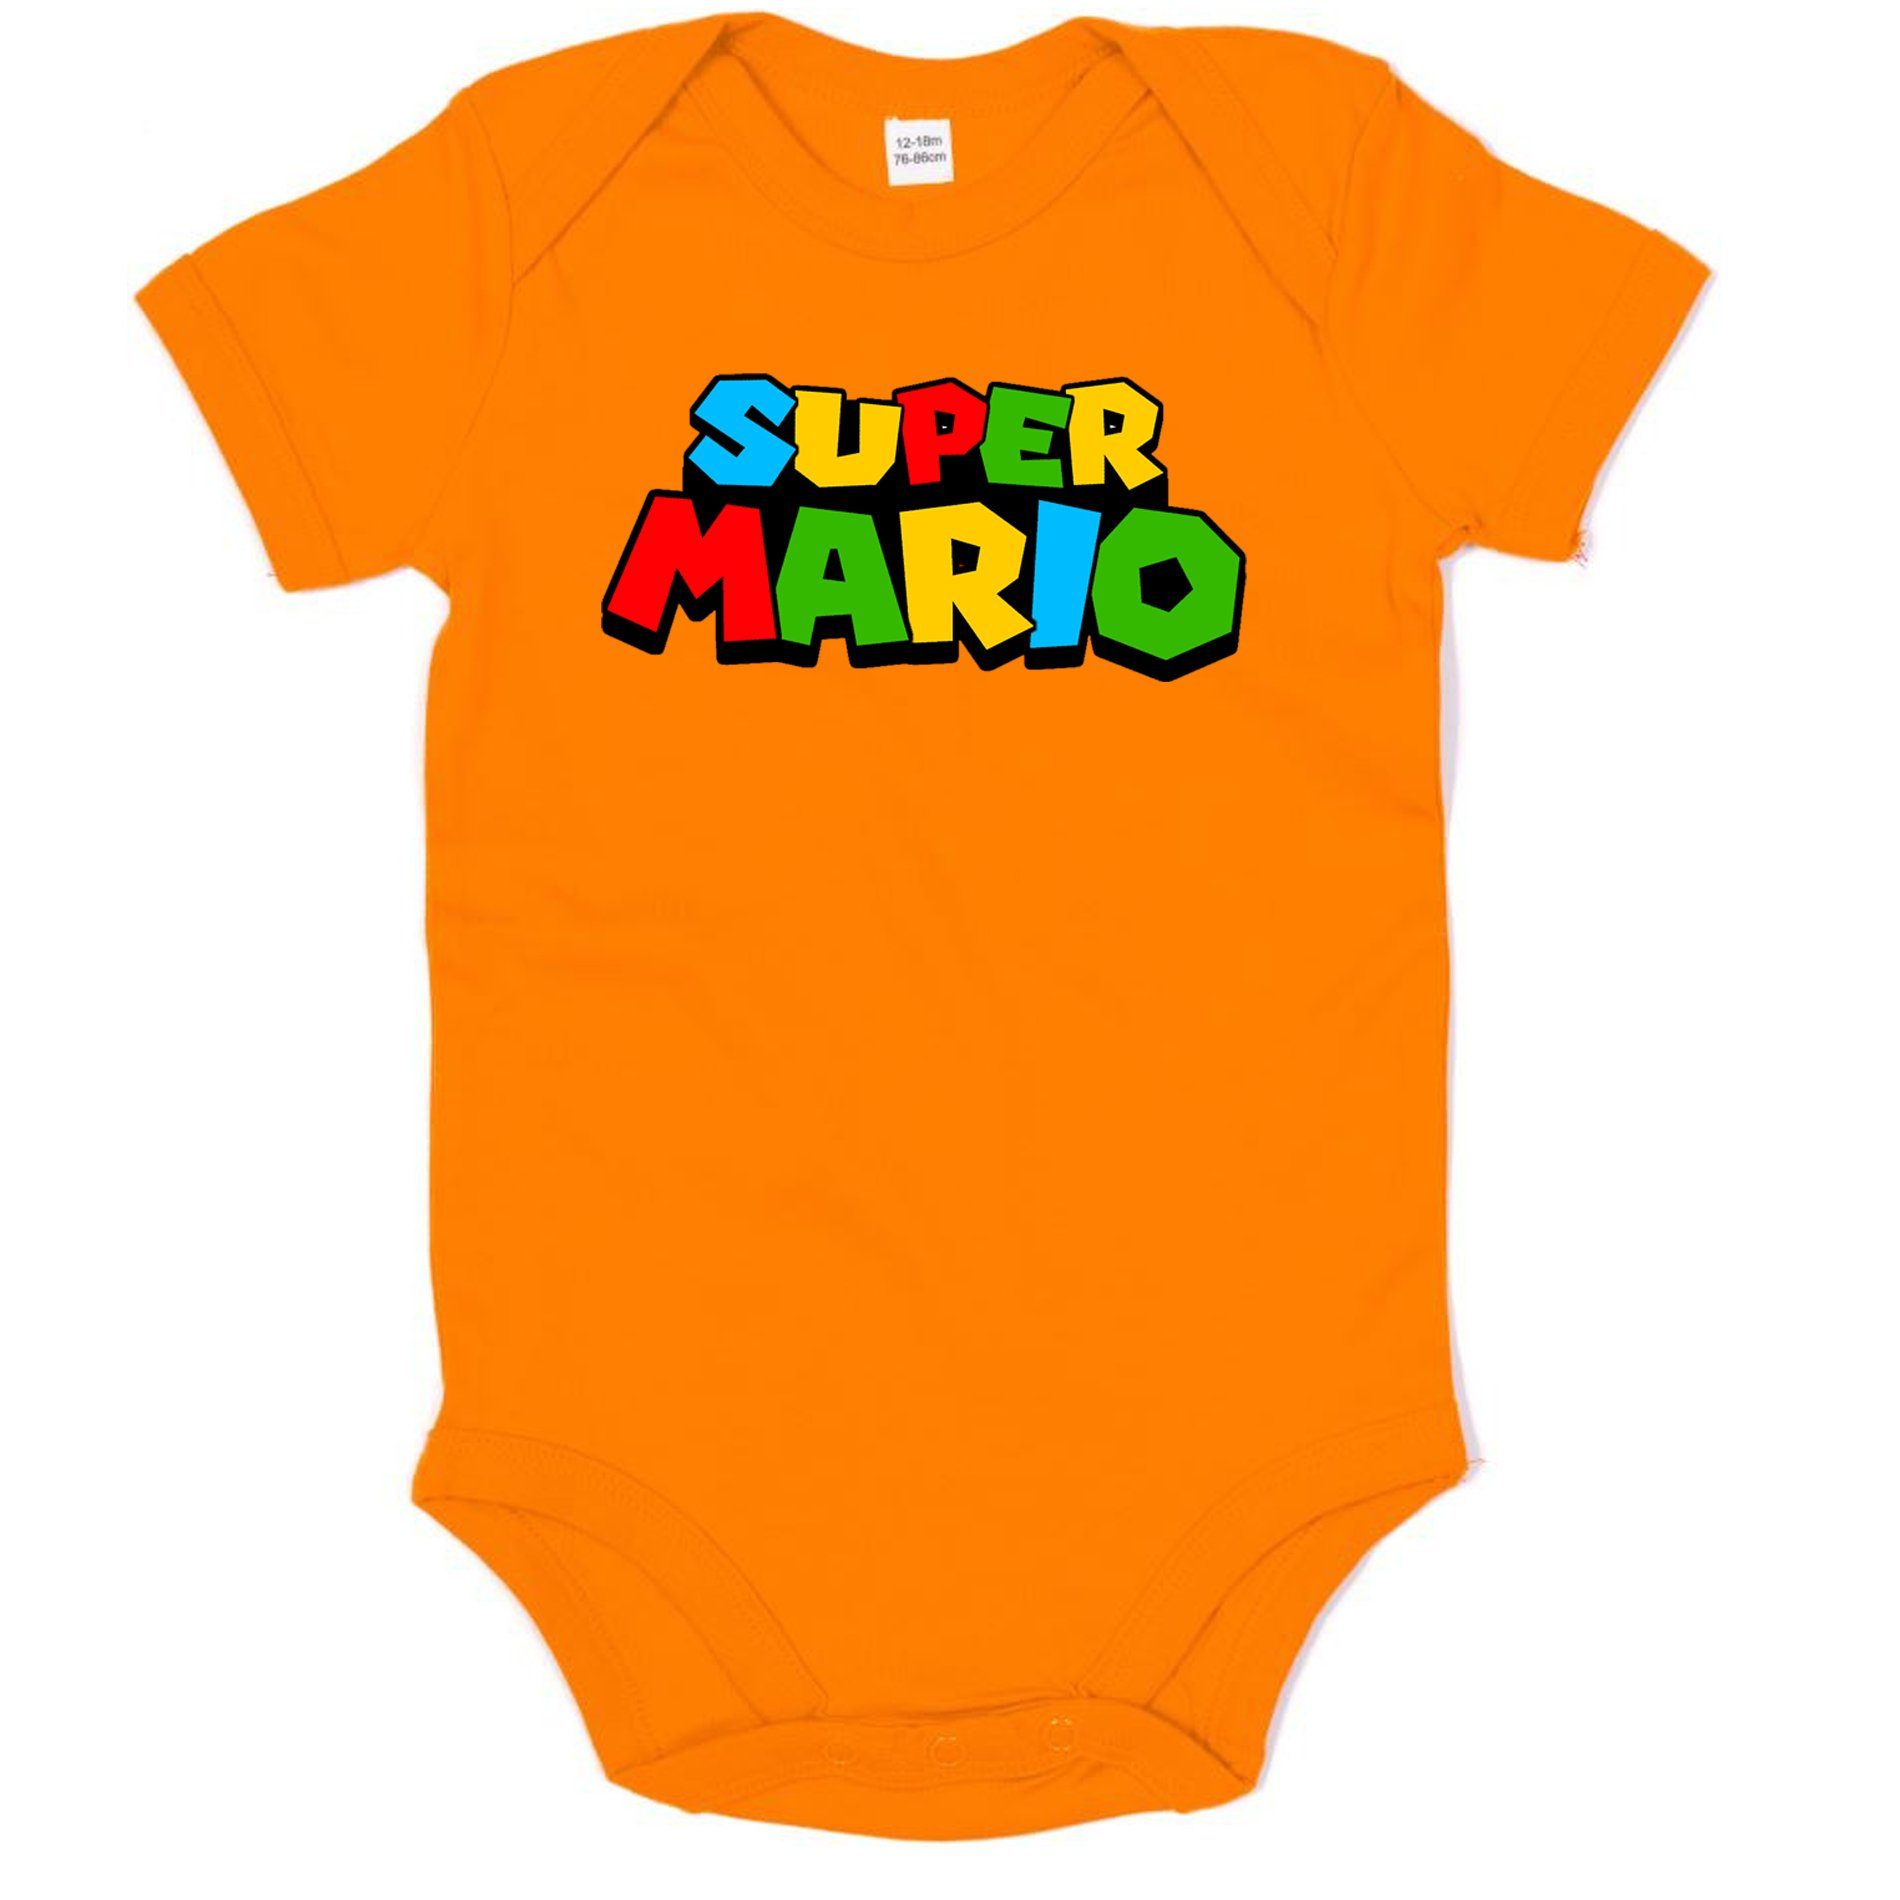 Blondie & Brownie Strampler Kinder Baby Super Mario Nintendo Gamer Gaming Konsole Spiele Orange